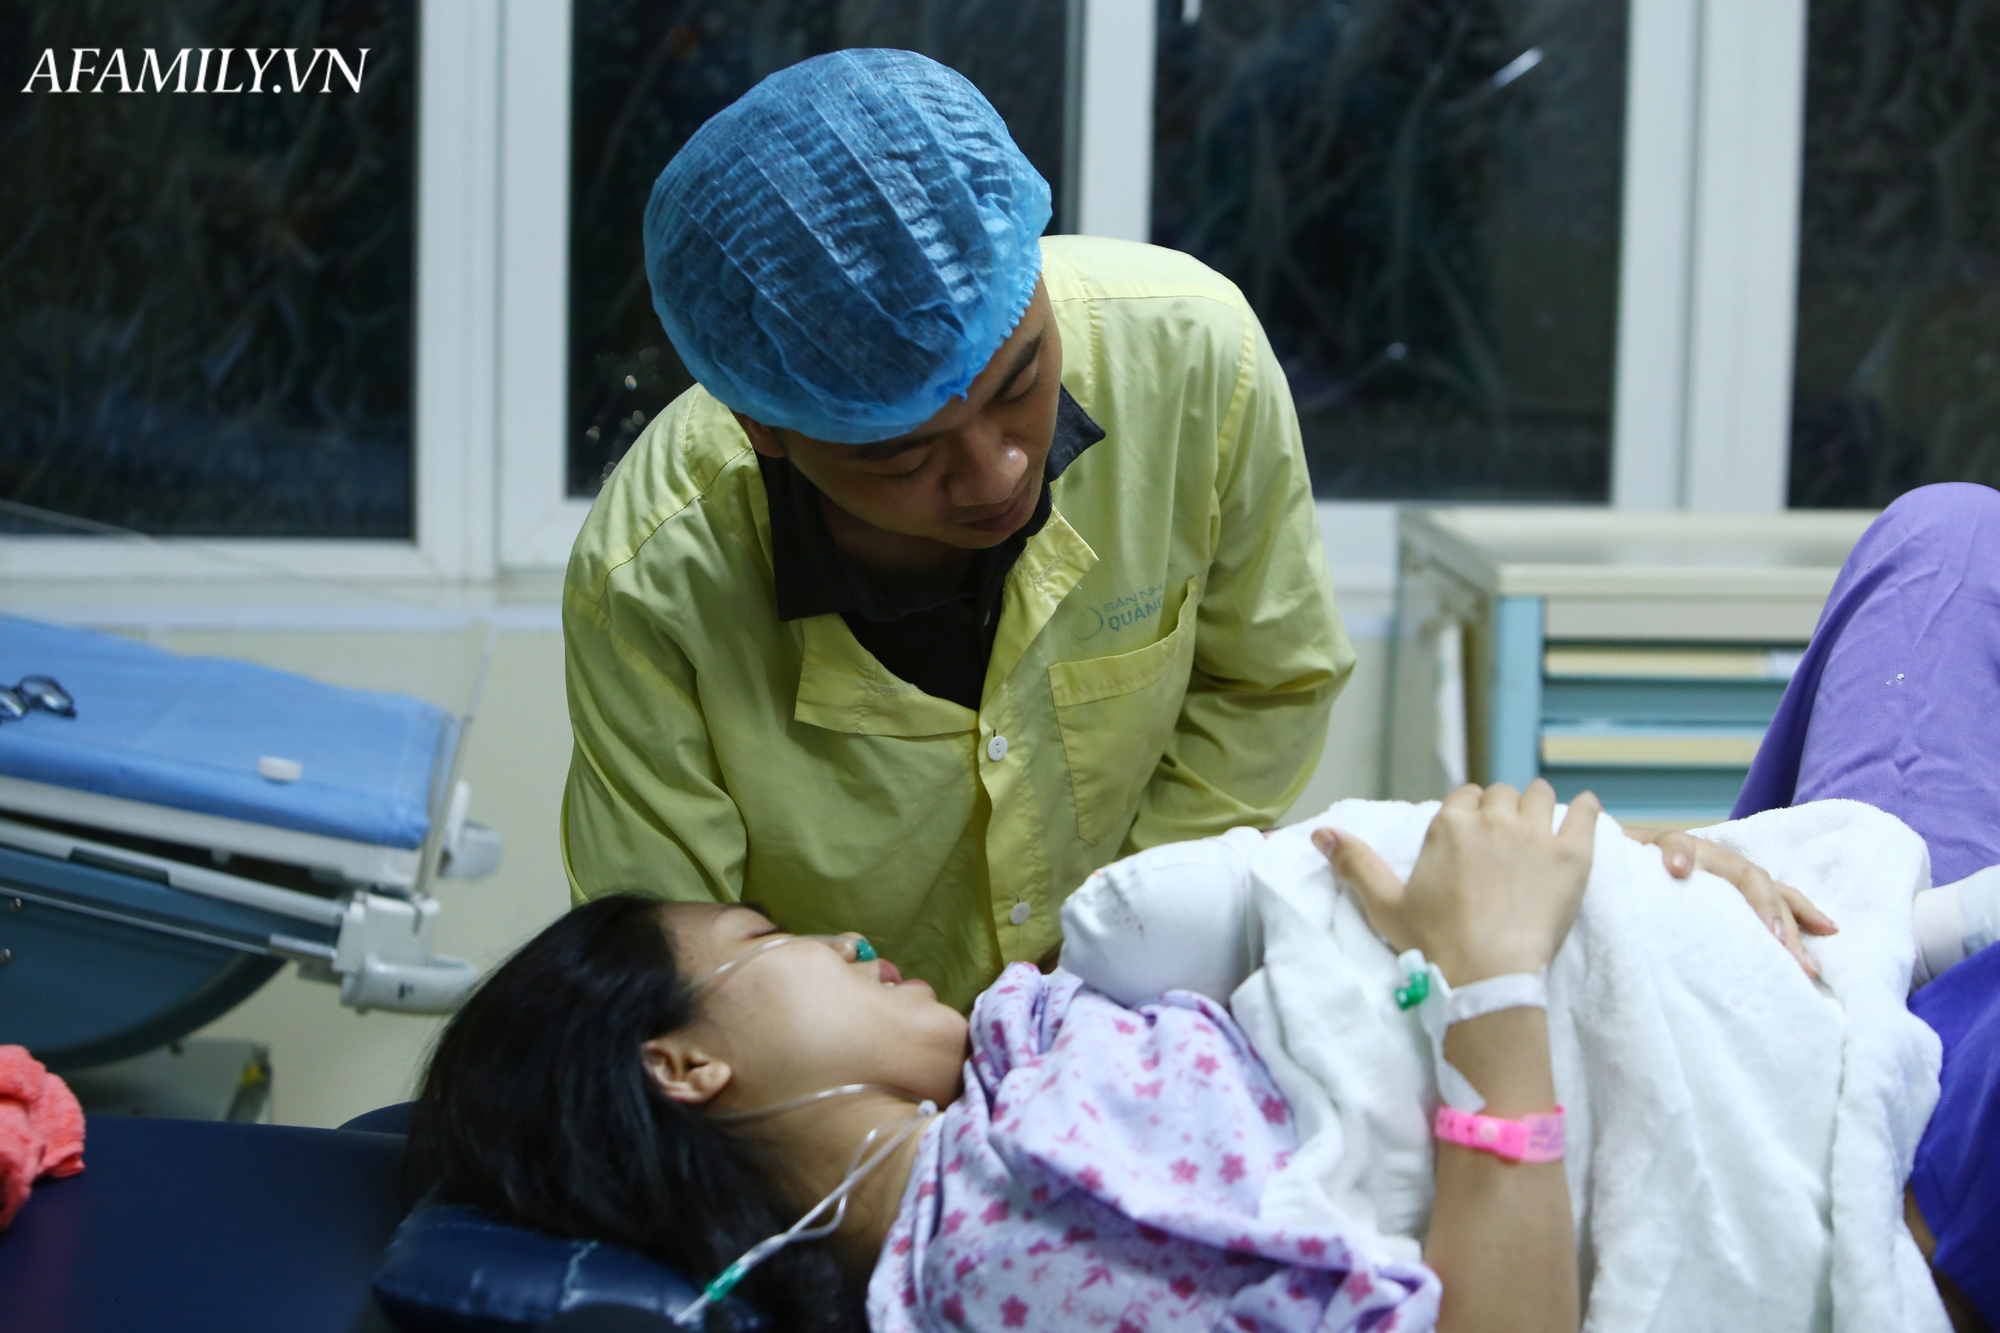 Phòng sinh thân thiện ở Bệnh viện Sản nhi Quảng Ninh: Sản phụ nào cũng được có người nhà đi kèm động viên lúc vượt cạn mà không mất thêm chi phí - Ảnh 4.